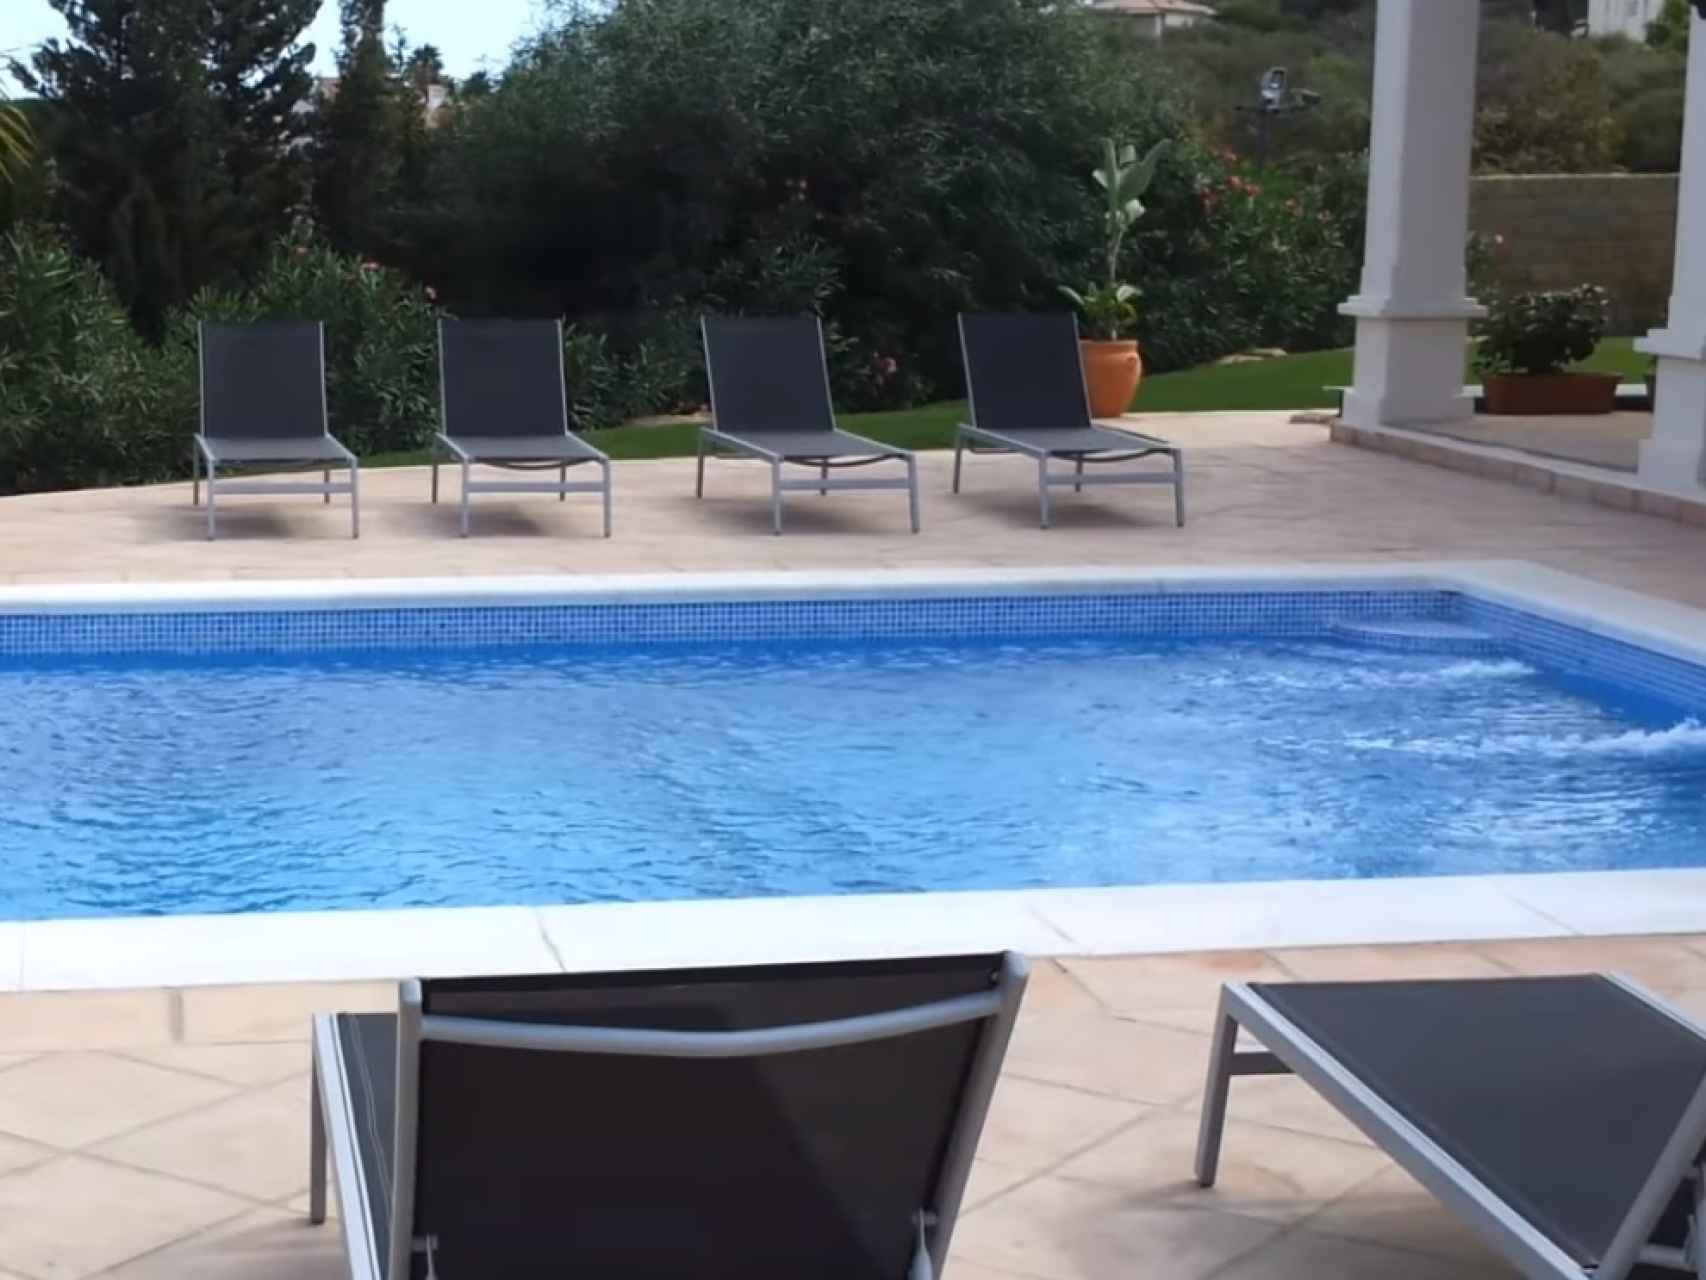 Una de las dos piscinas con las que cuenta la casa.